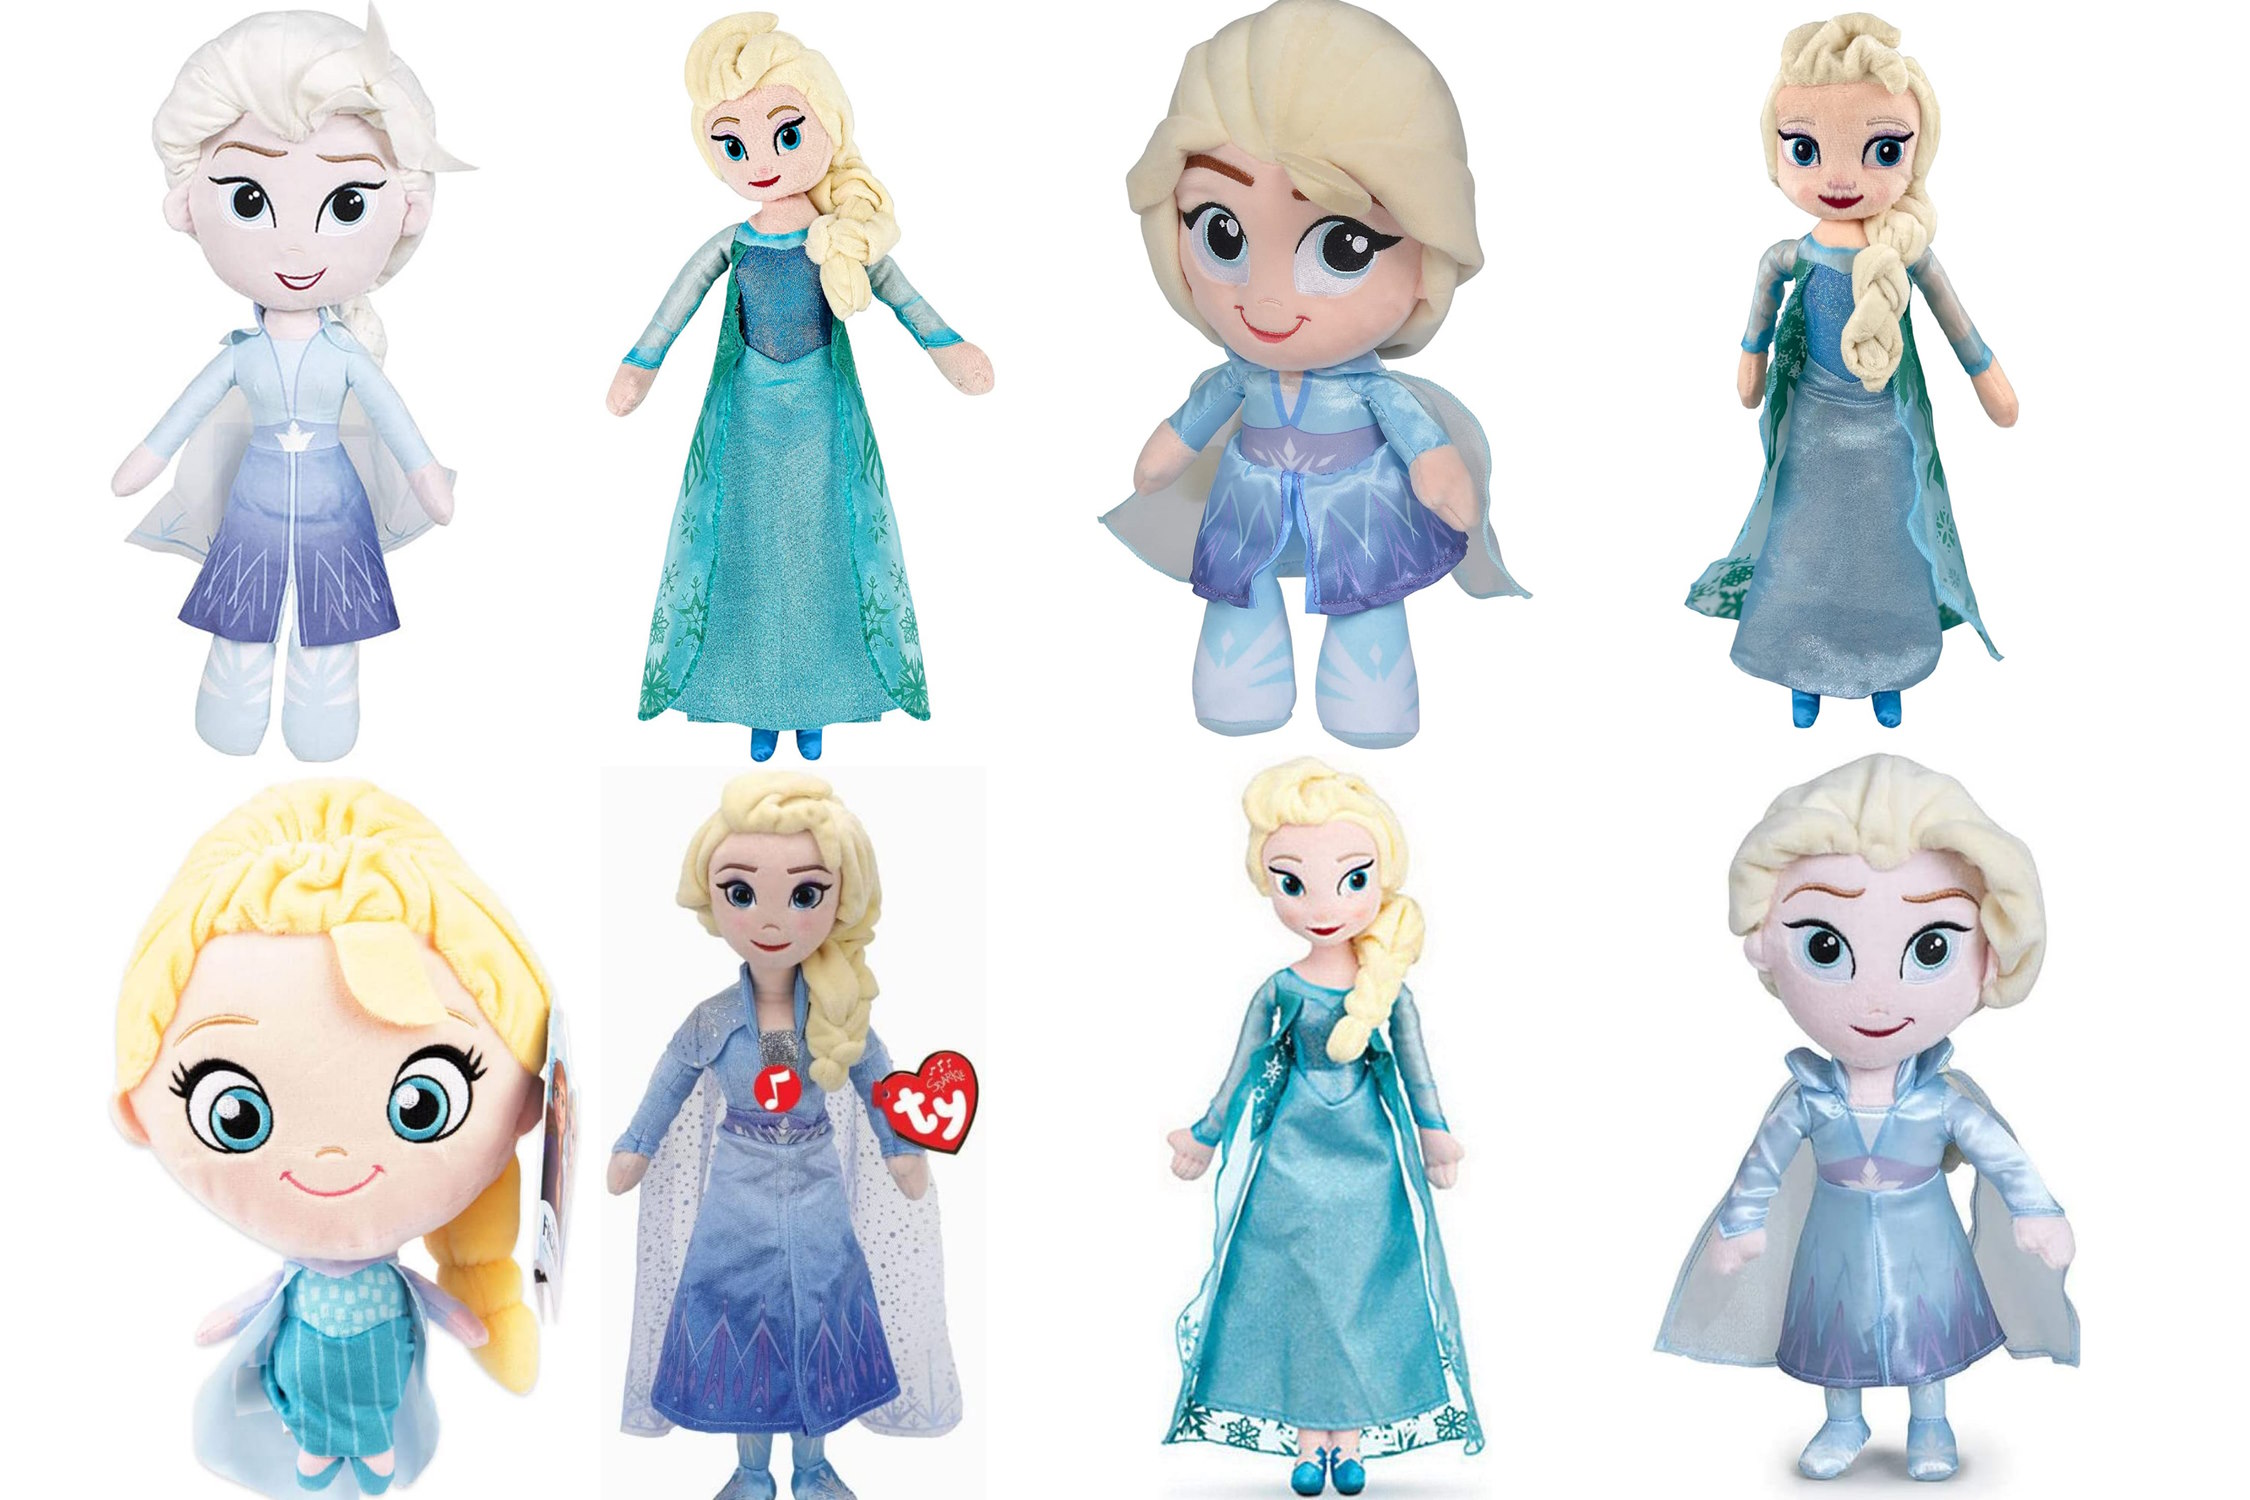 Elsa plyschleksak från Frozen